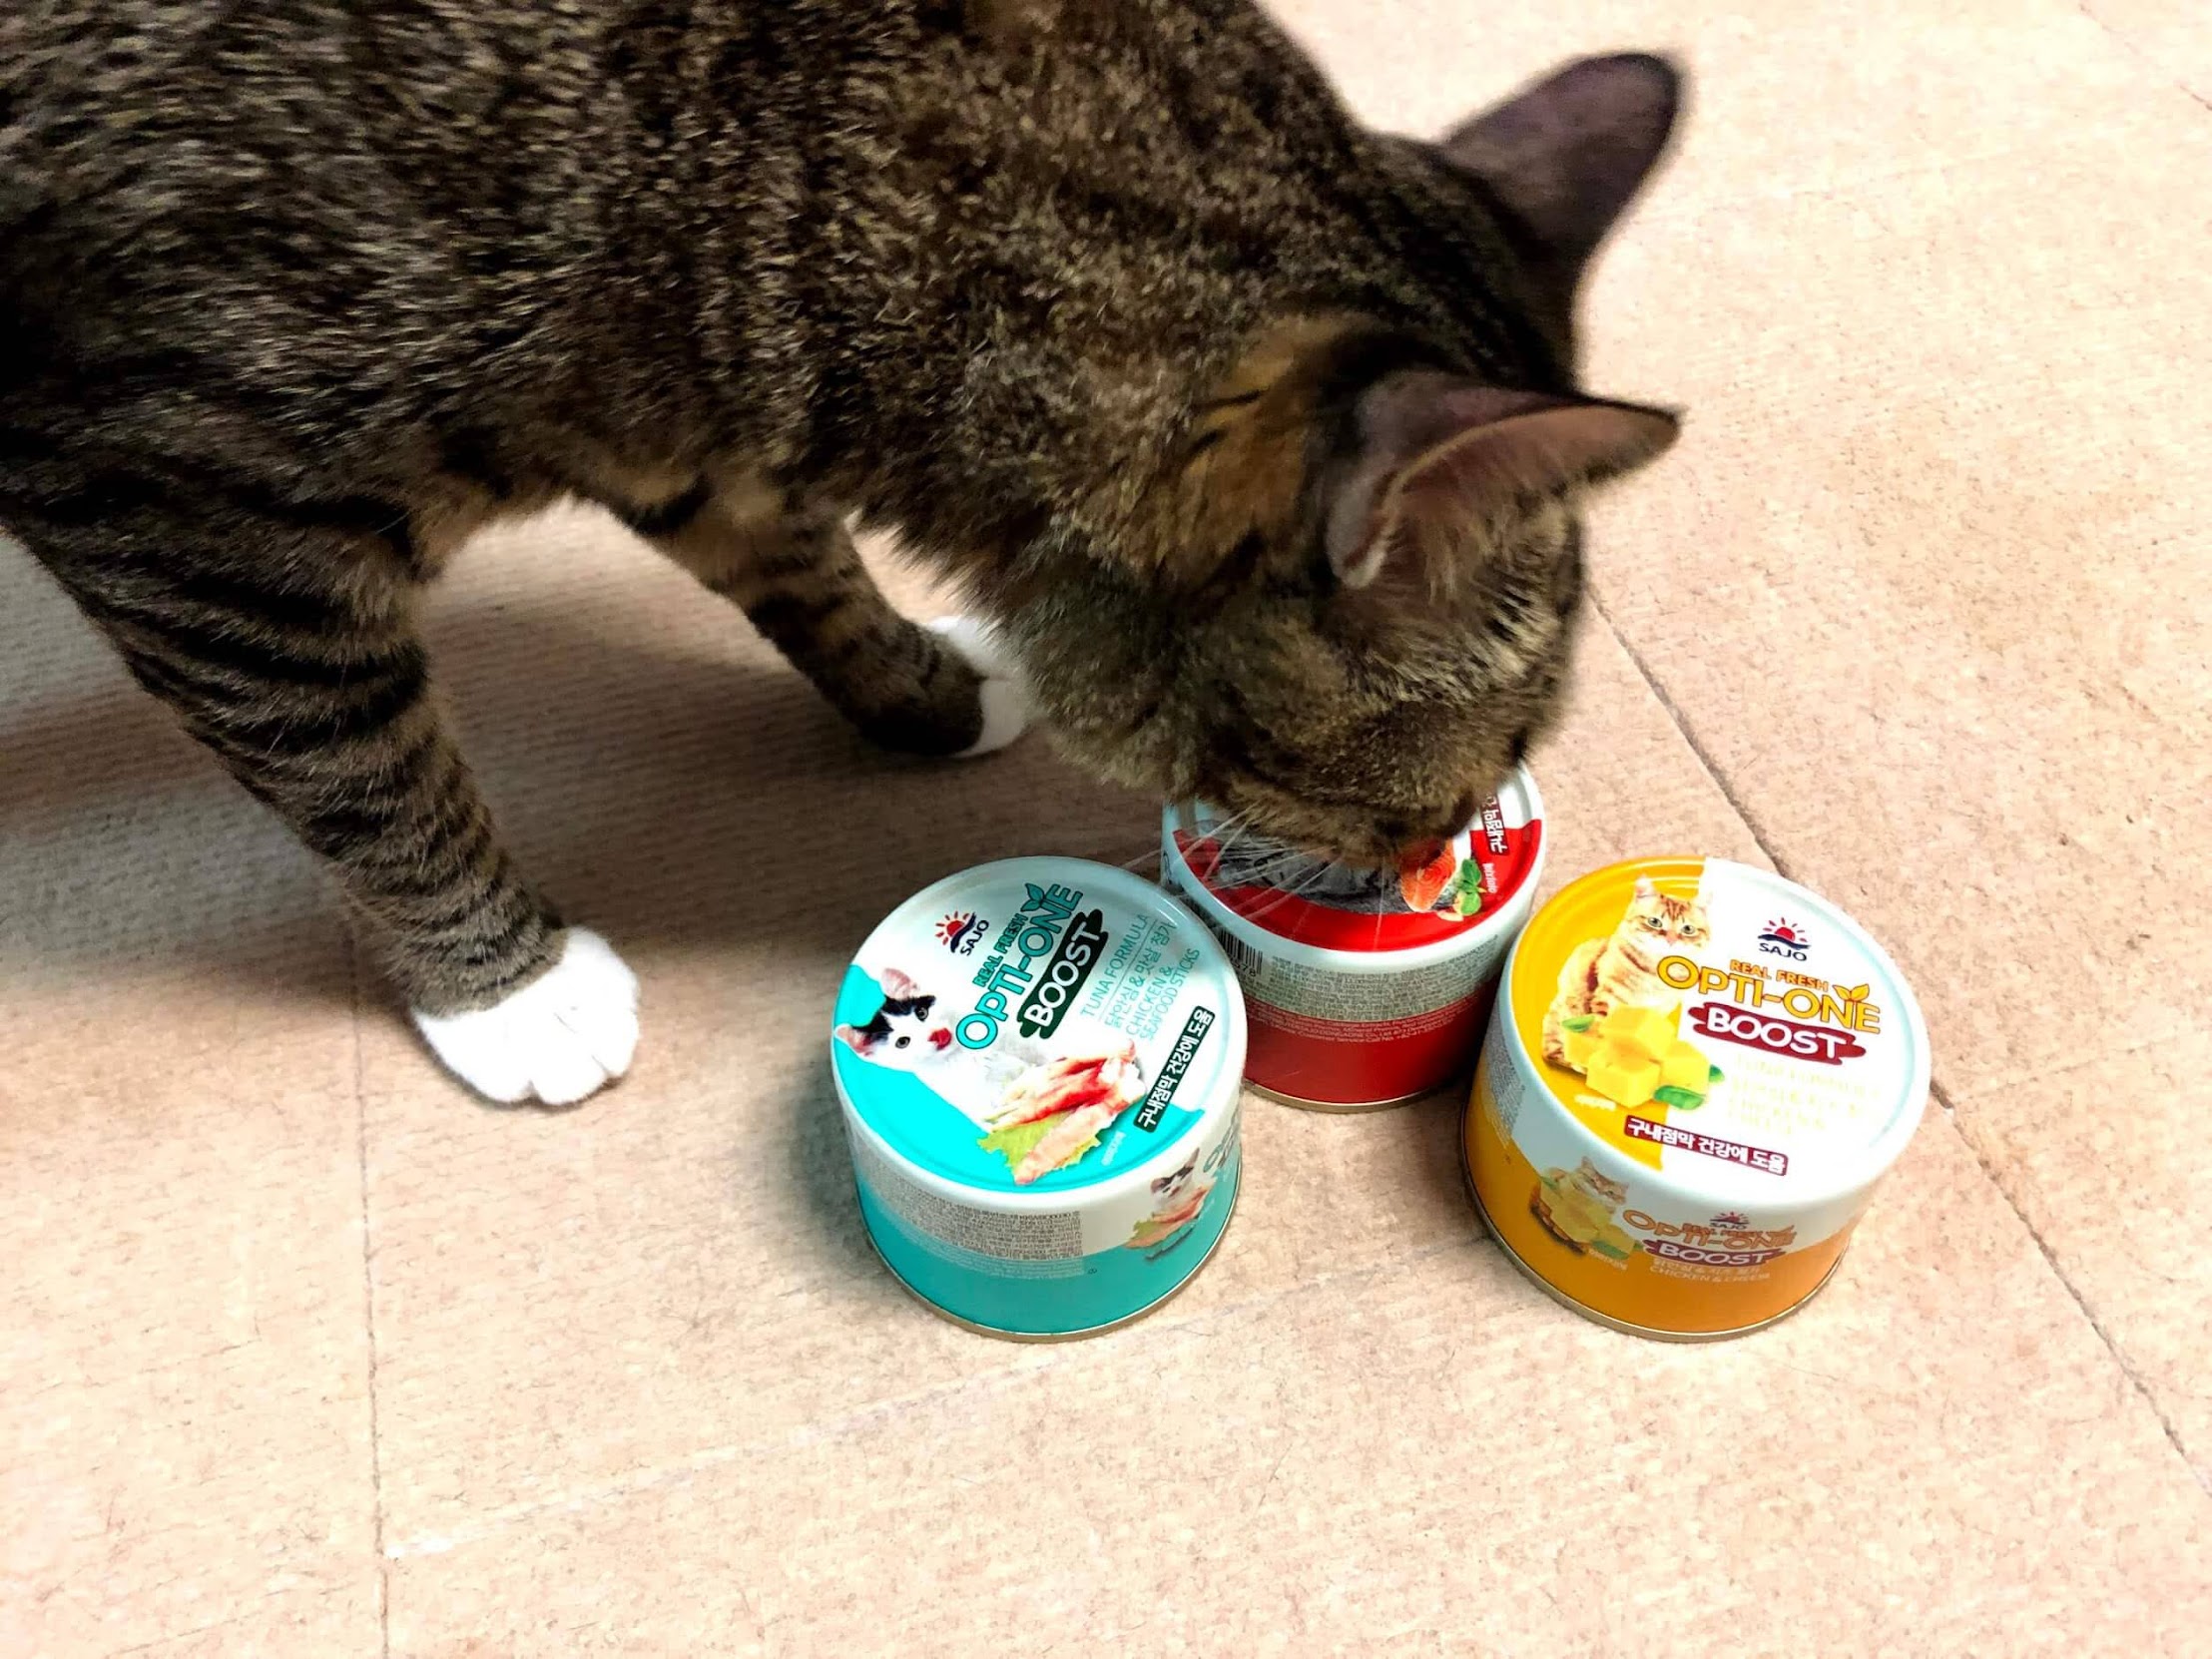 고양이 습식사료 주식캔 - 사조 옵티원 부스트 캔
wet food can for cat - sajo opti-one boost